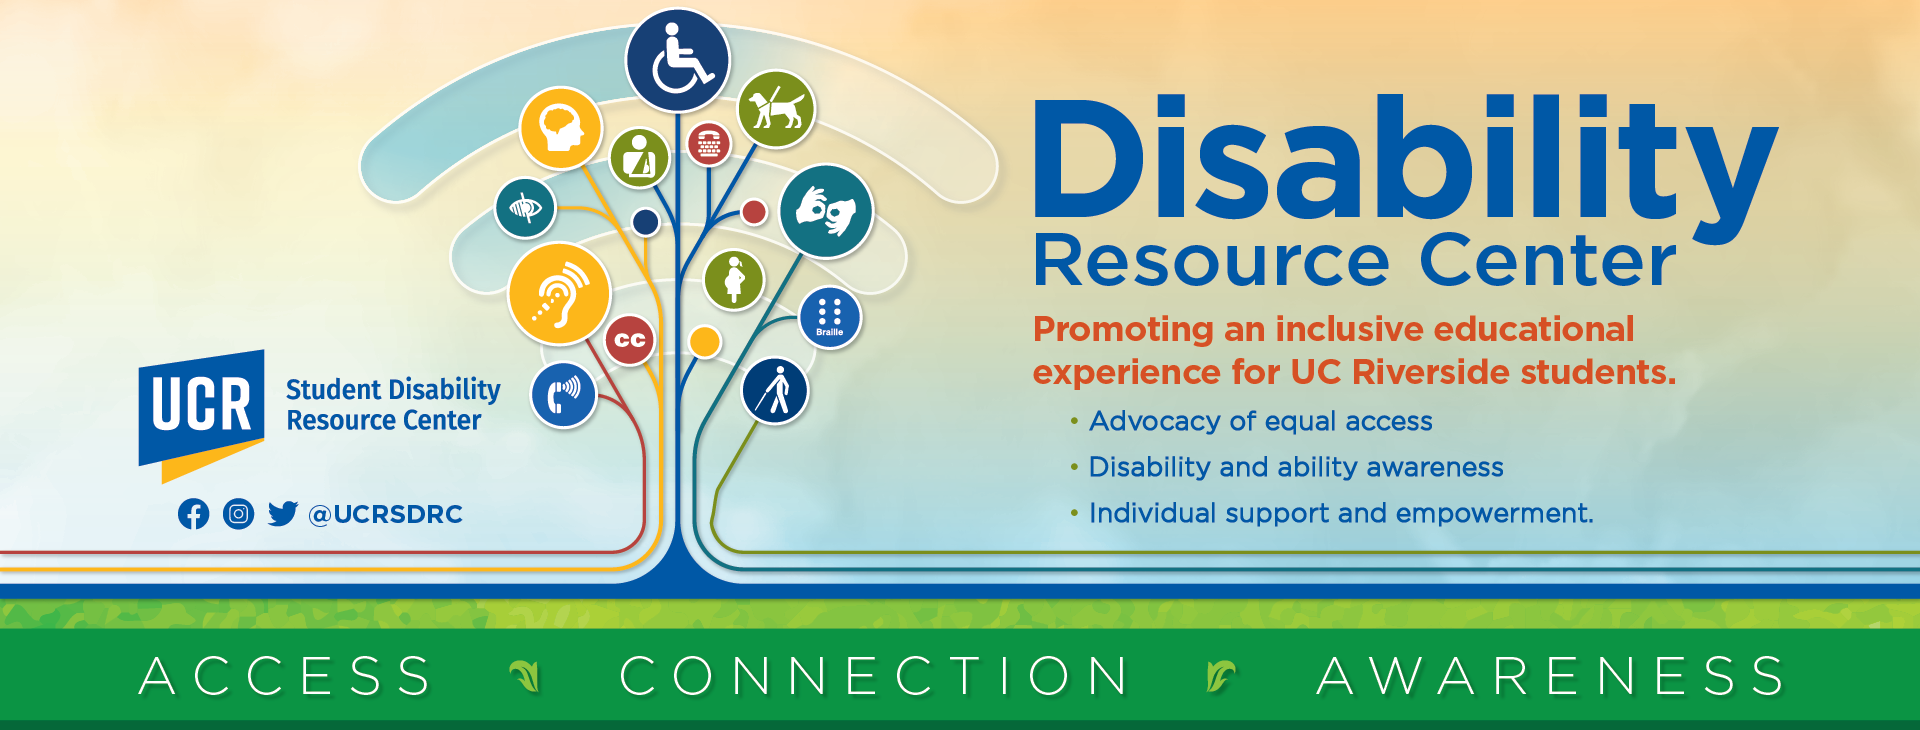 UCR disability resource center w21 slider